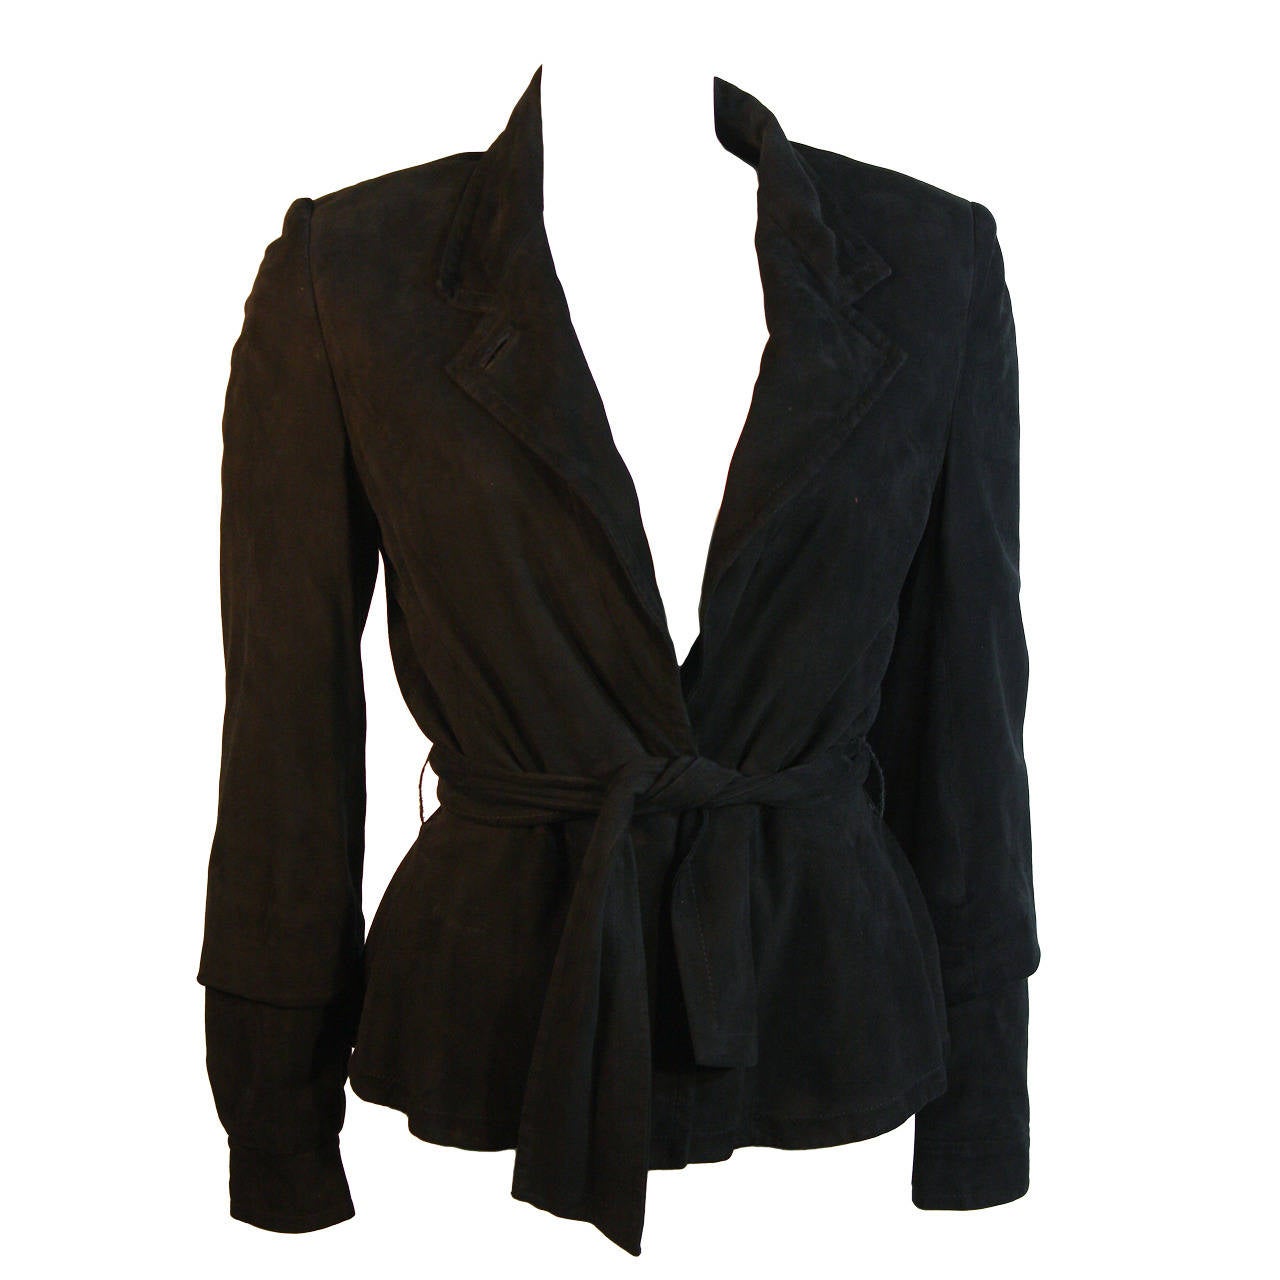 Yves Saint Laurent Black Suede Jacket Size 40